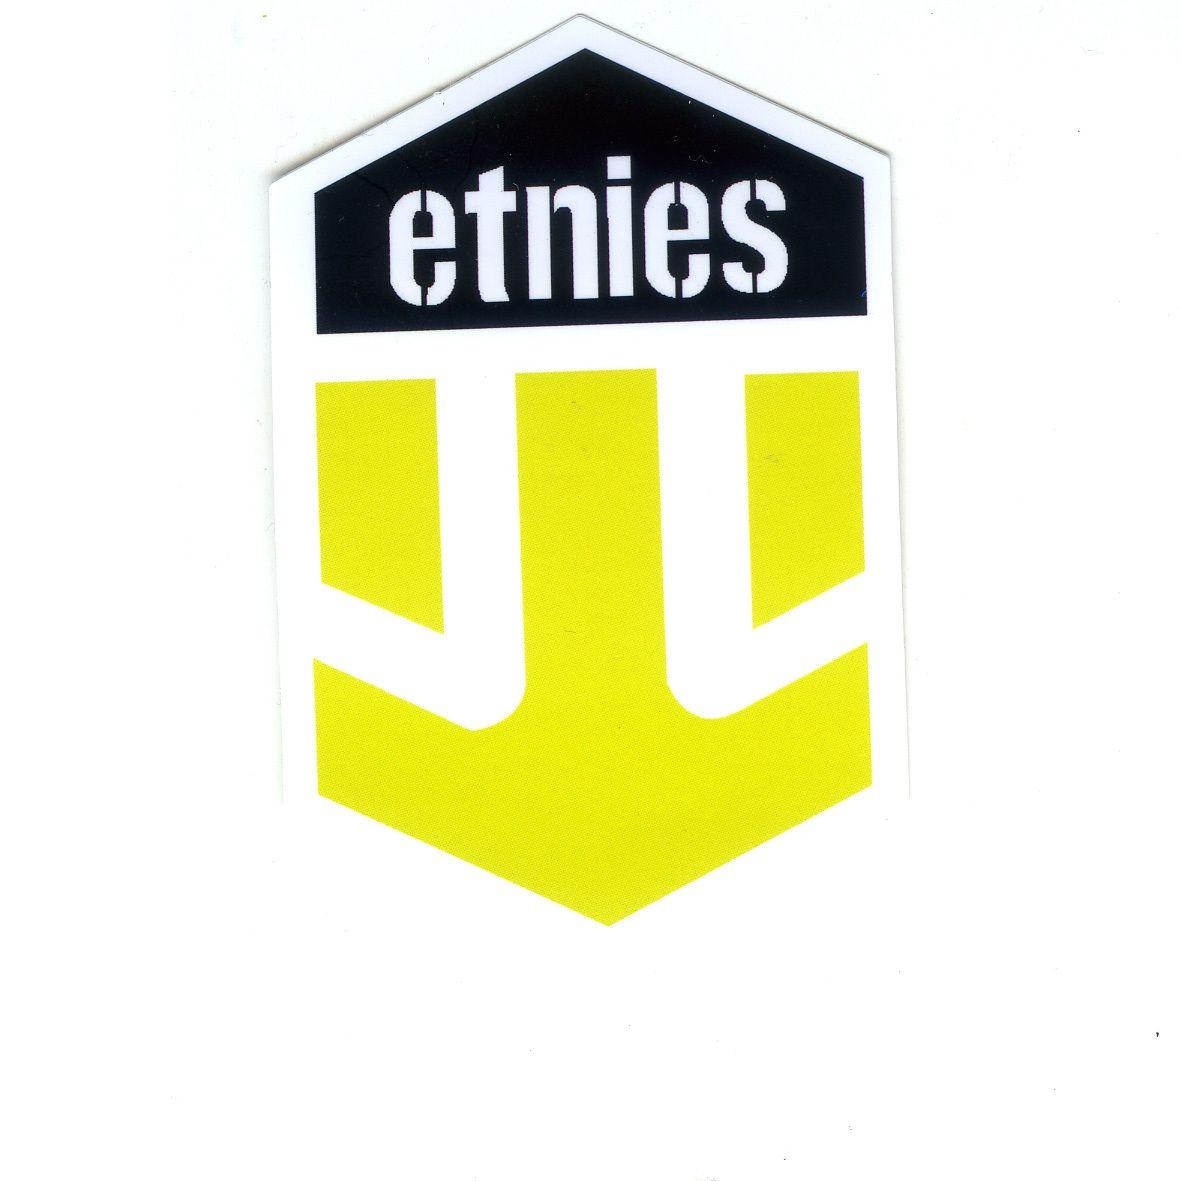 Etnies Logo - 1460 etnies logo , Width 8 cm decal sticker - DecalStar.com